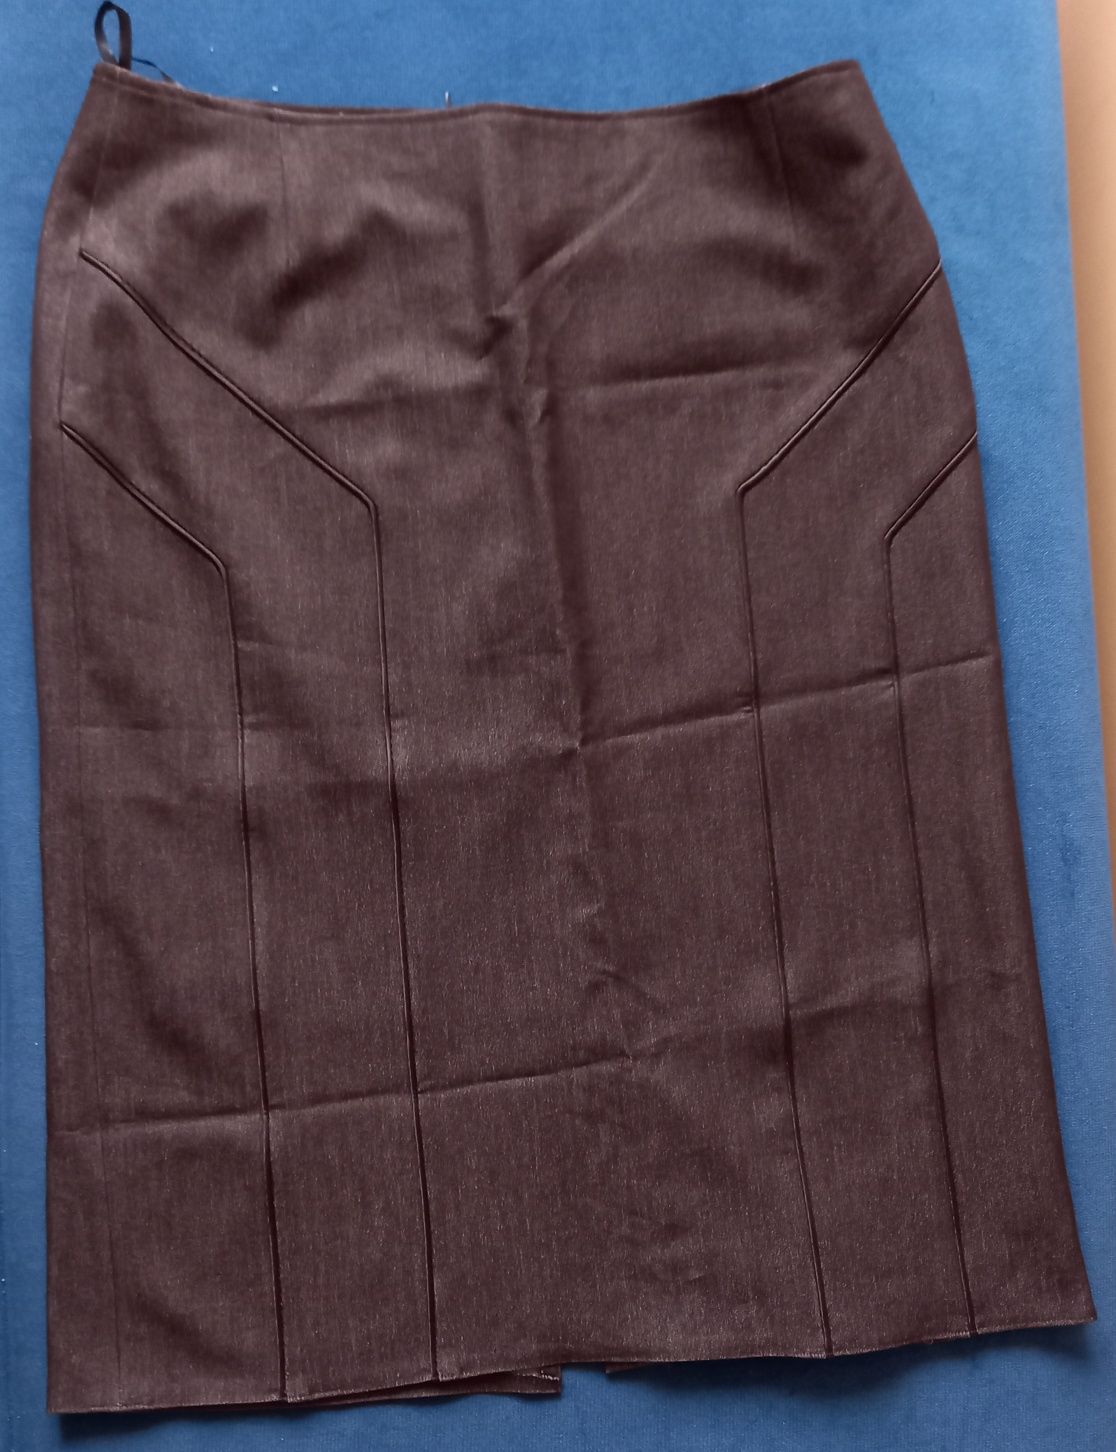 Spódnica- elegancka, ołówkowa, brąz z połyskiem (nowa)